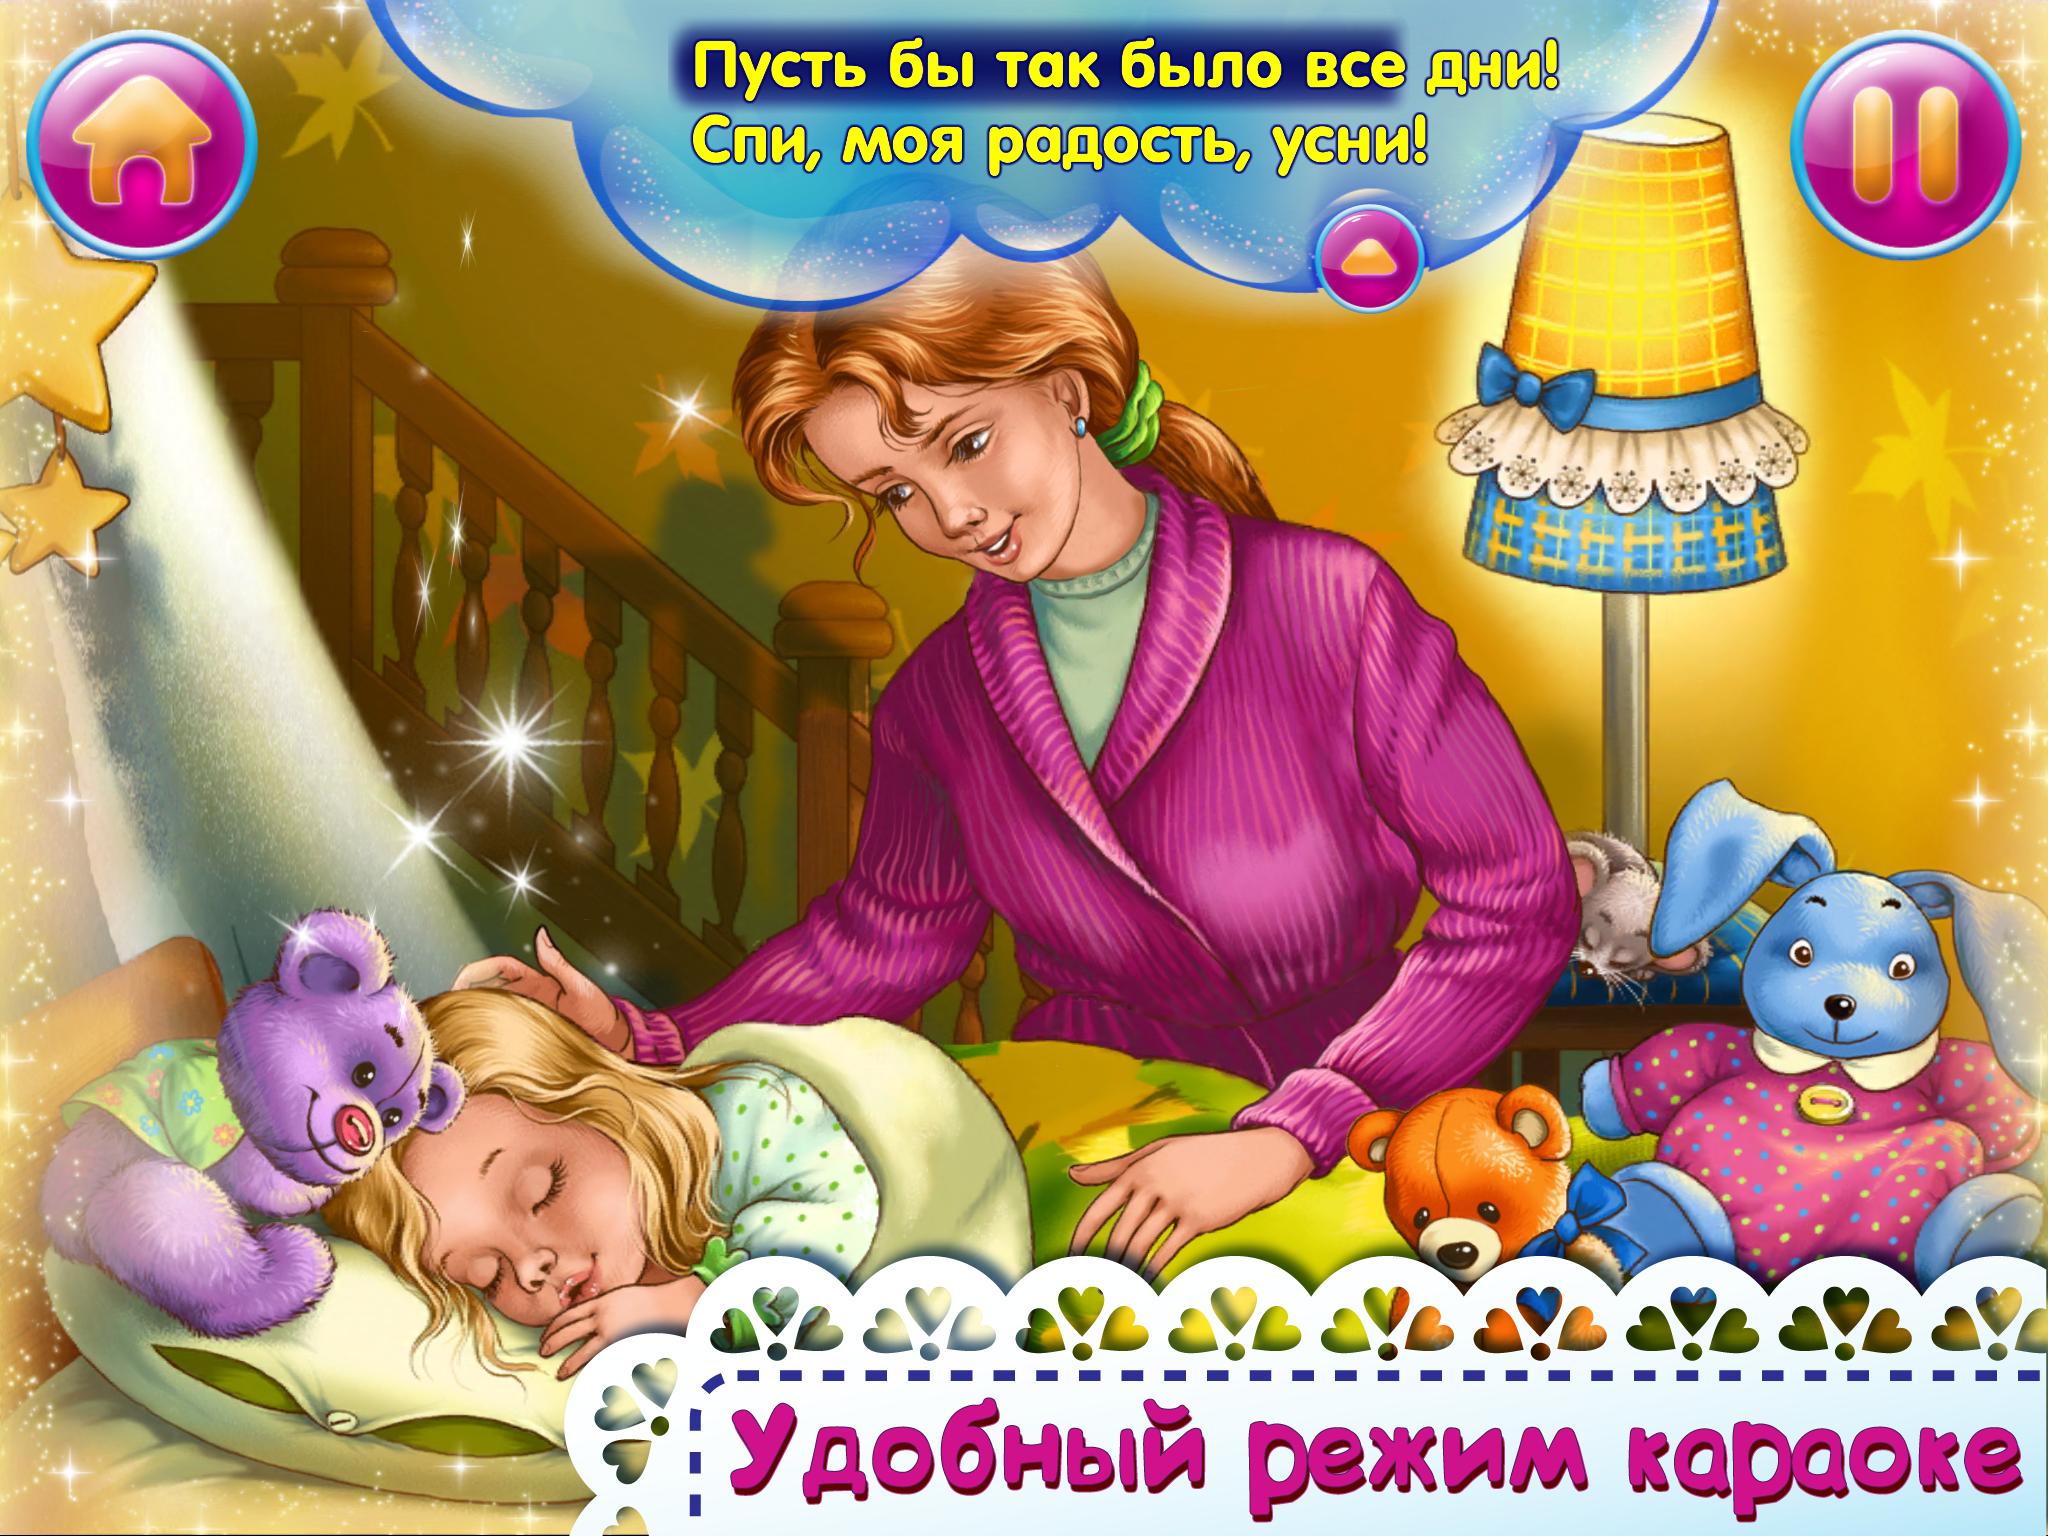 1 часа колыбельная спи. Колыбельные для малышей. Иллюстрация к колыбельной. Колыбельная для малышей спи моя радость. Колыбельная картинки для детей.